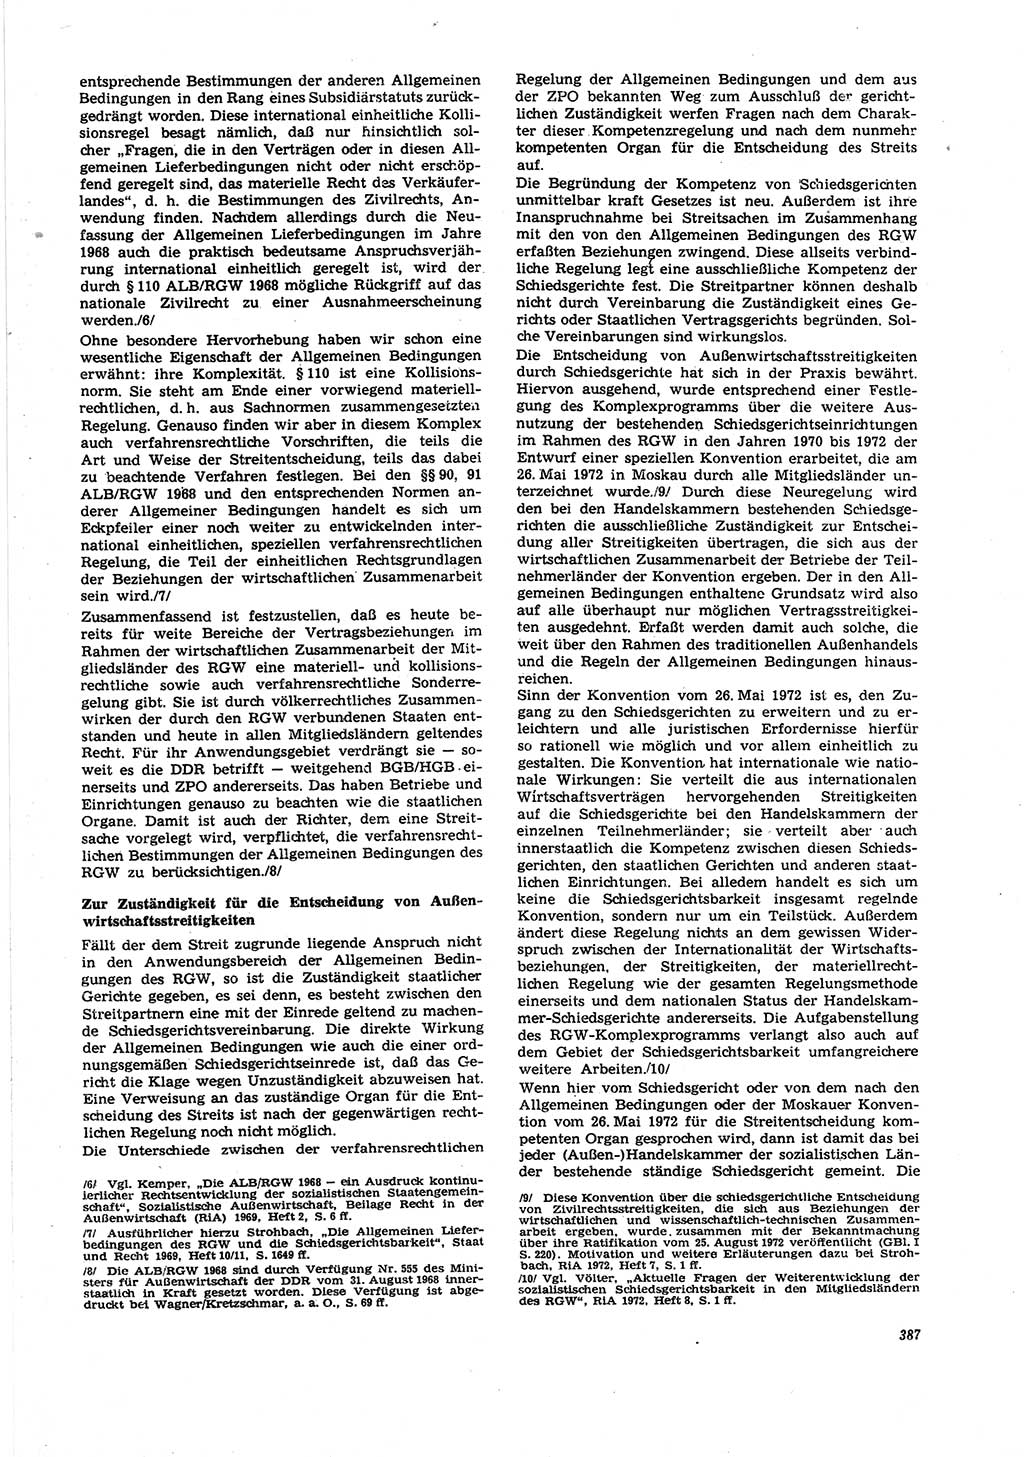 Neue Justiz (NJ), Zeitschrift für Recht und Rechtswissenschaft [Deutsche Demokratische Republik (DDR)], 27. Jahrgang 1973, Seite 387 (NJ DDR 1973, S. 387)